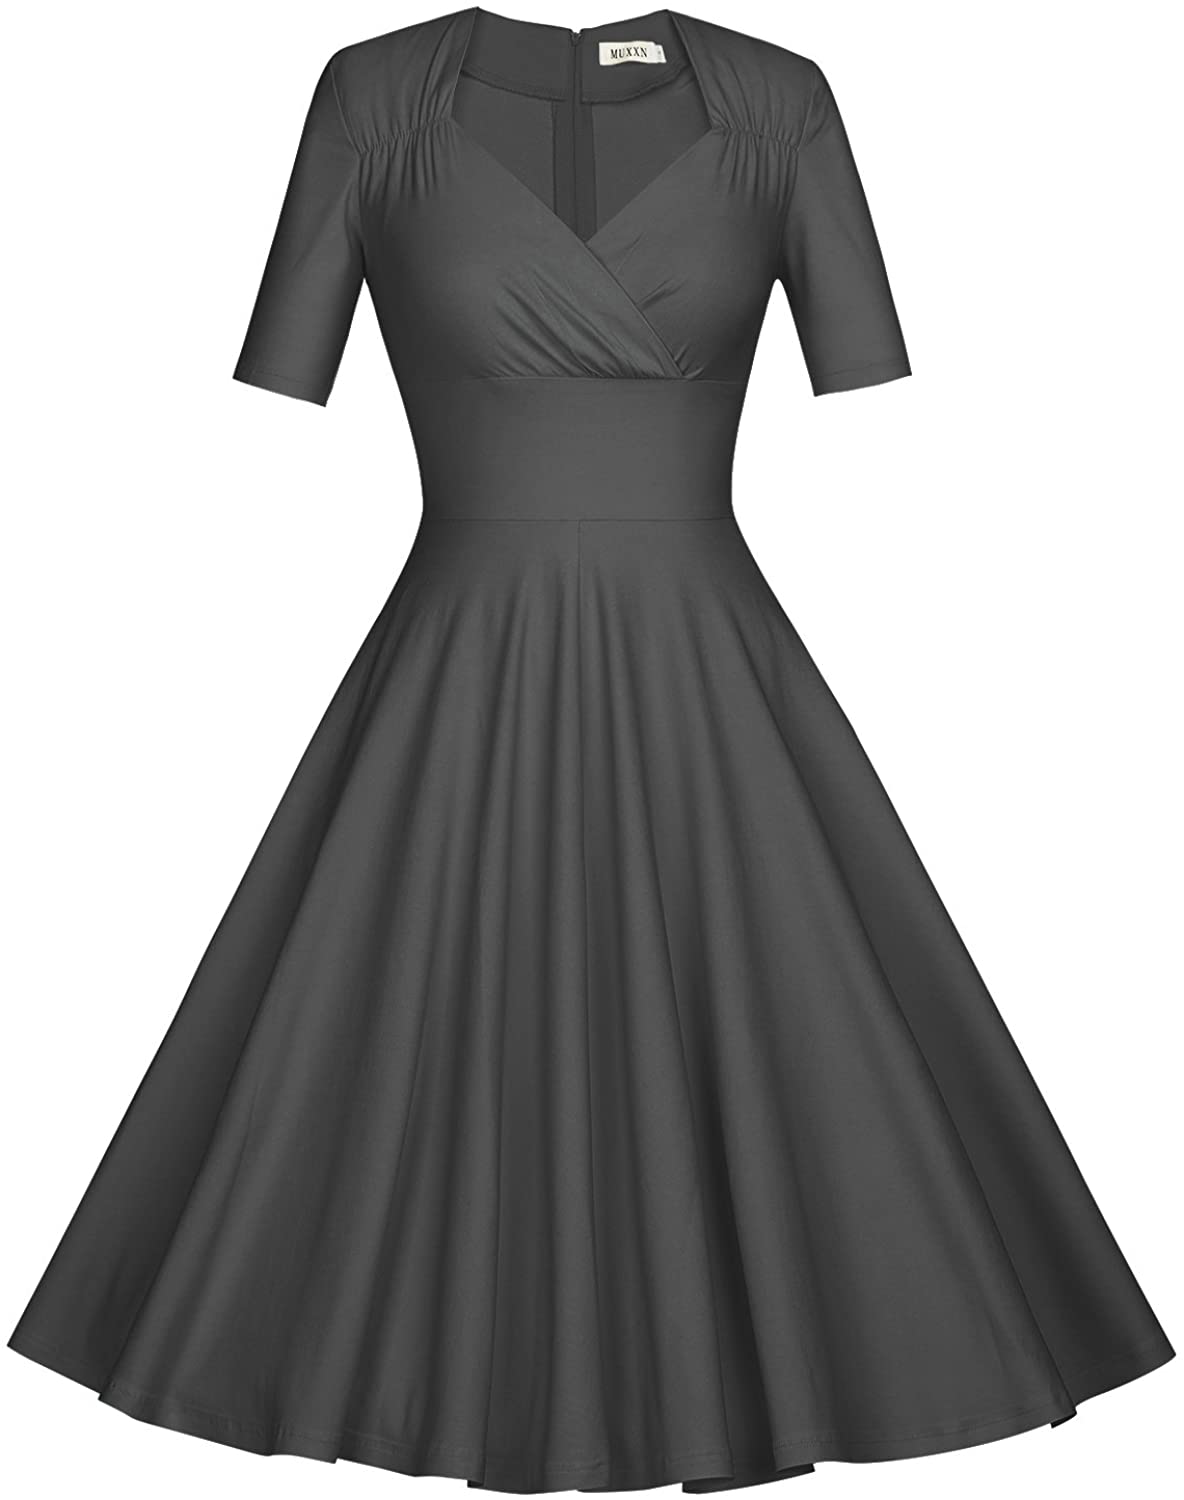 MUXXN Women's 50s Vintage Short Sleeve Pleated Swing Dress | eBay